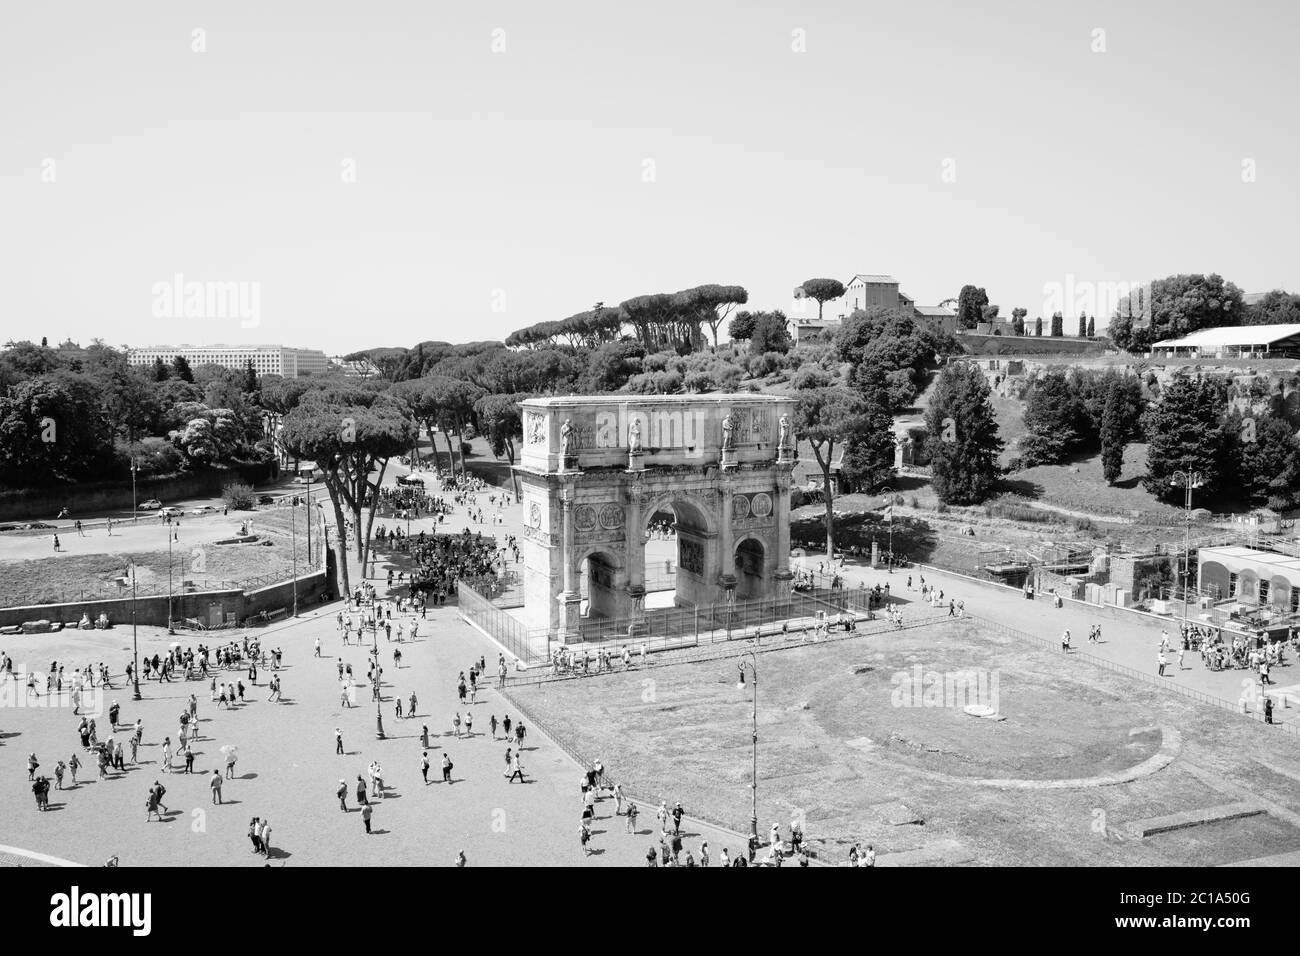 Rome, Italie - 20 juin 2018 : Arc de triomphe de Constantin à Rome, situé entre le Colisée et le Palatin Banque D'Images